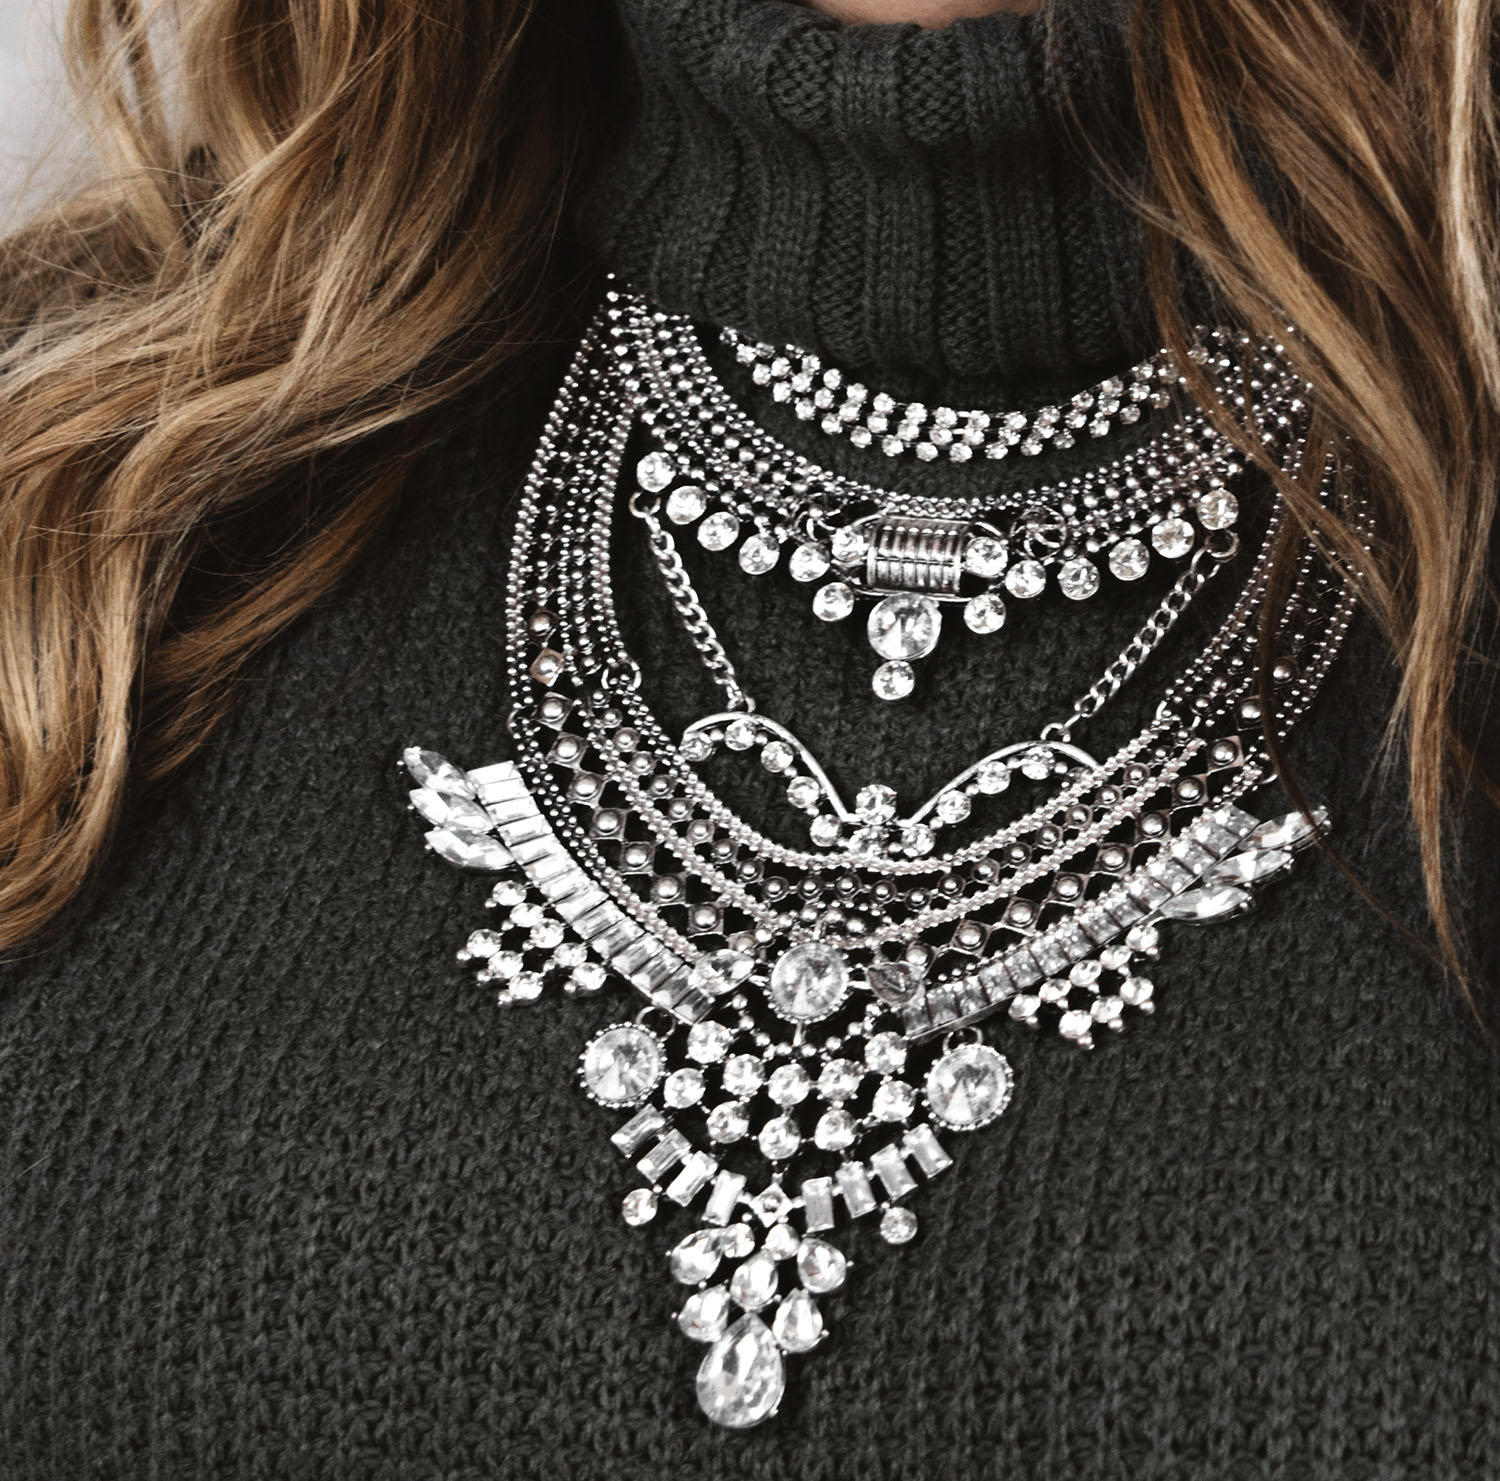 Oreleaa Fashion Long Boho Bib Statement Turkish Jewelry Choker Necklace for Women